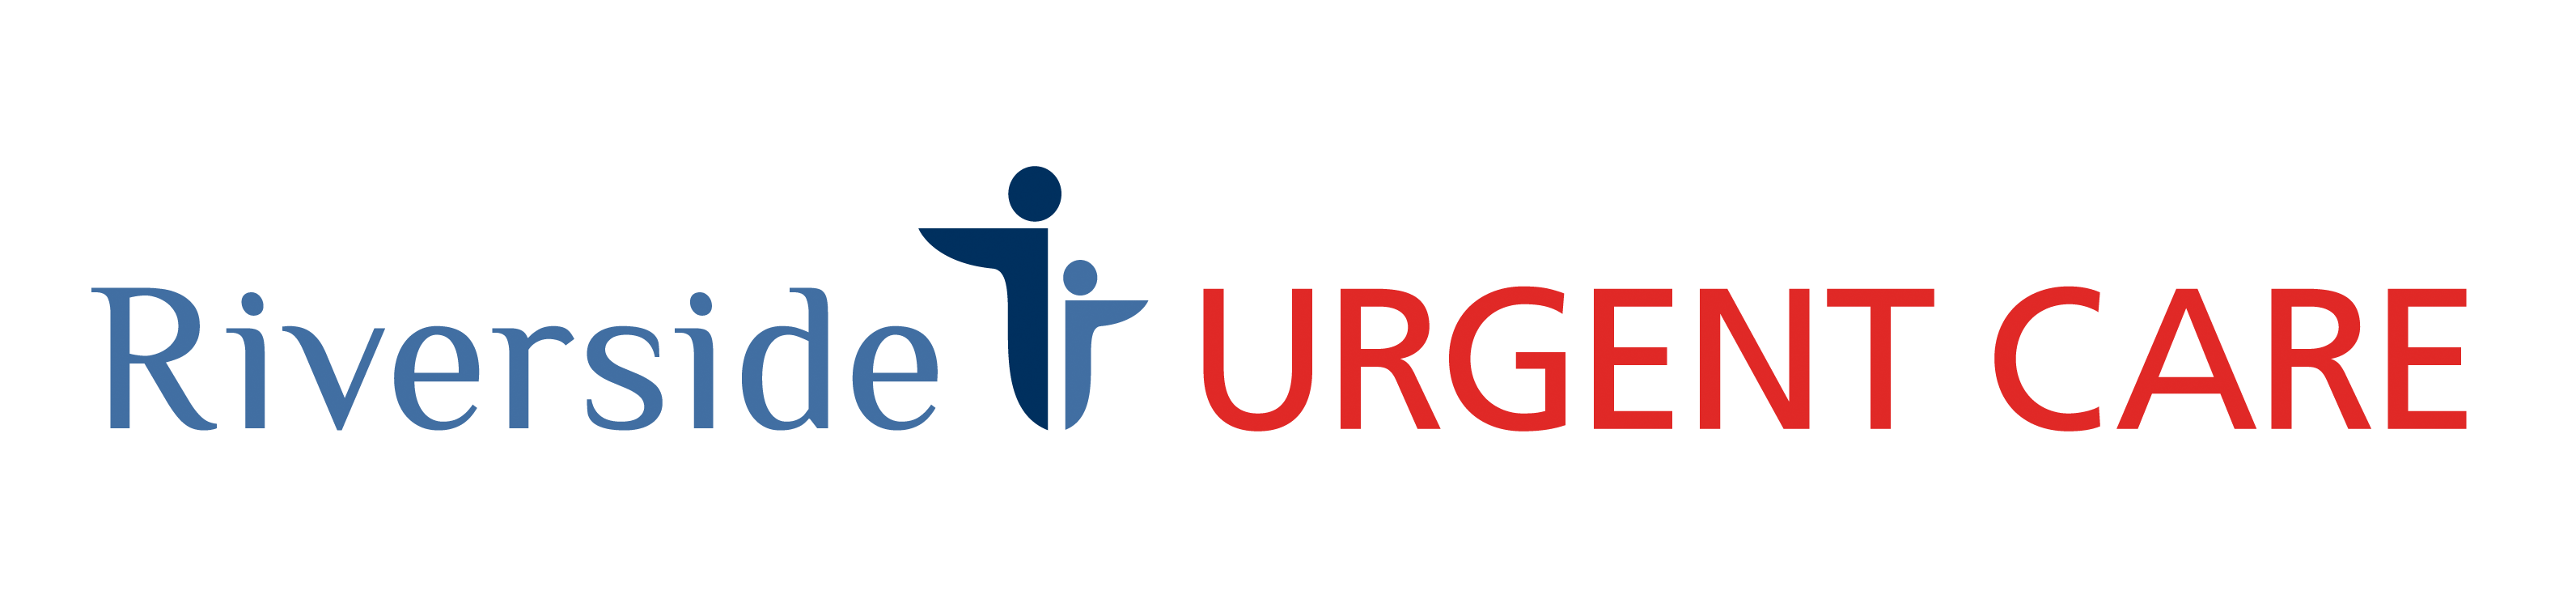 Optum Urgent Care - Howell Logo